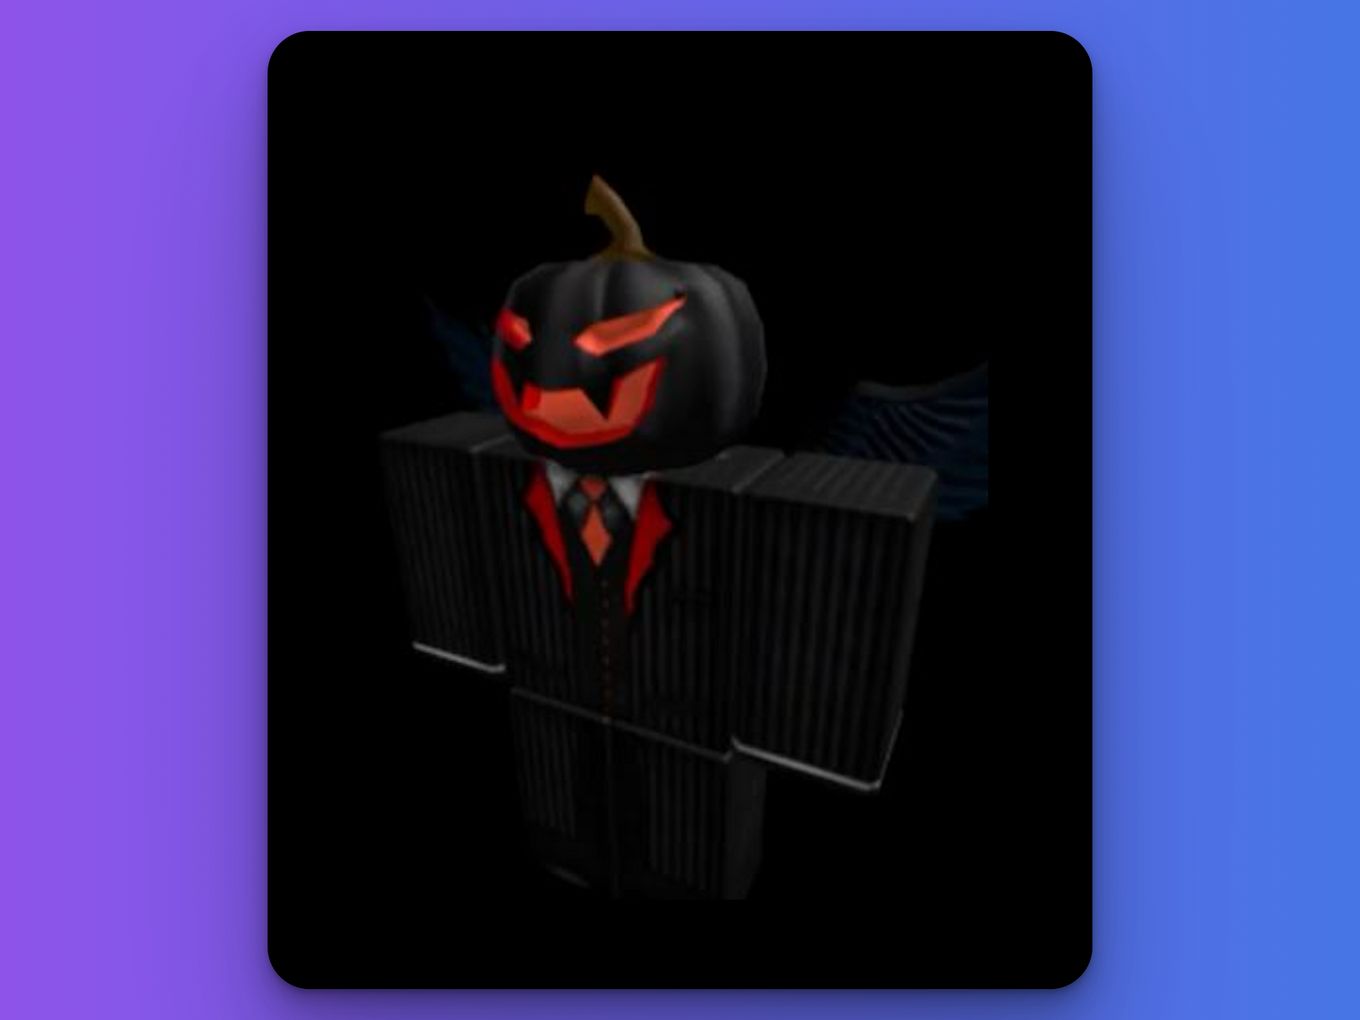 Classic Roblox Avatars - Dark Evil Pumpkin